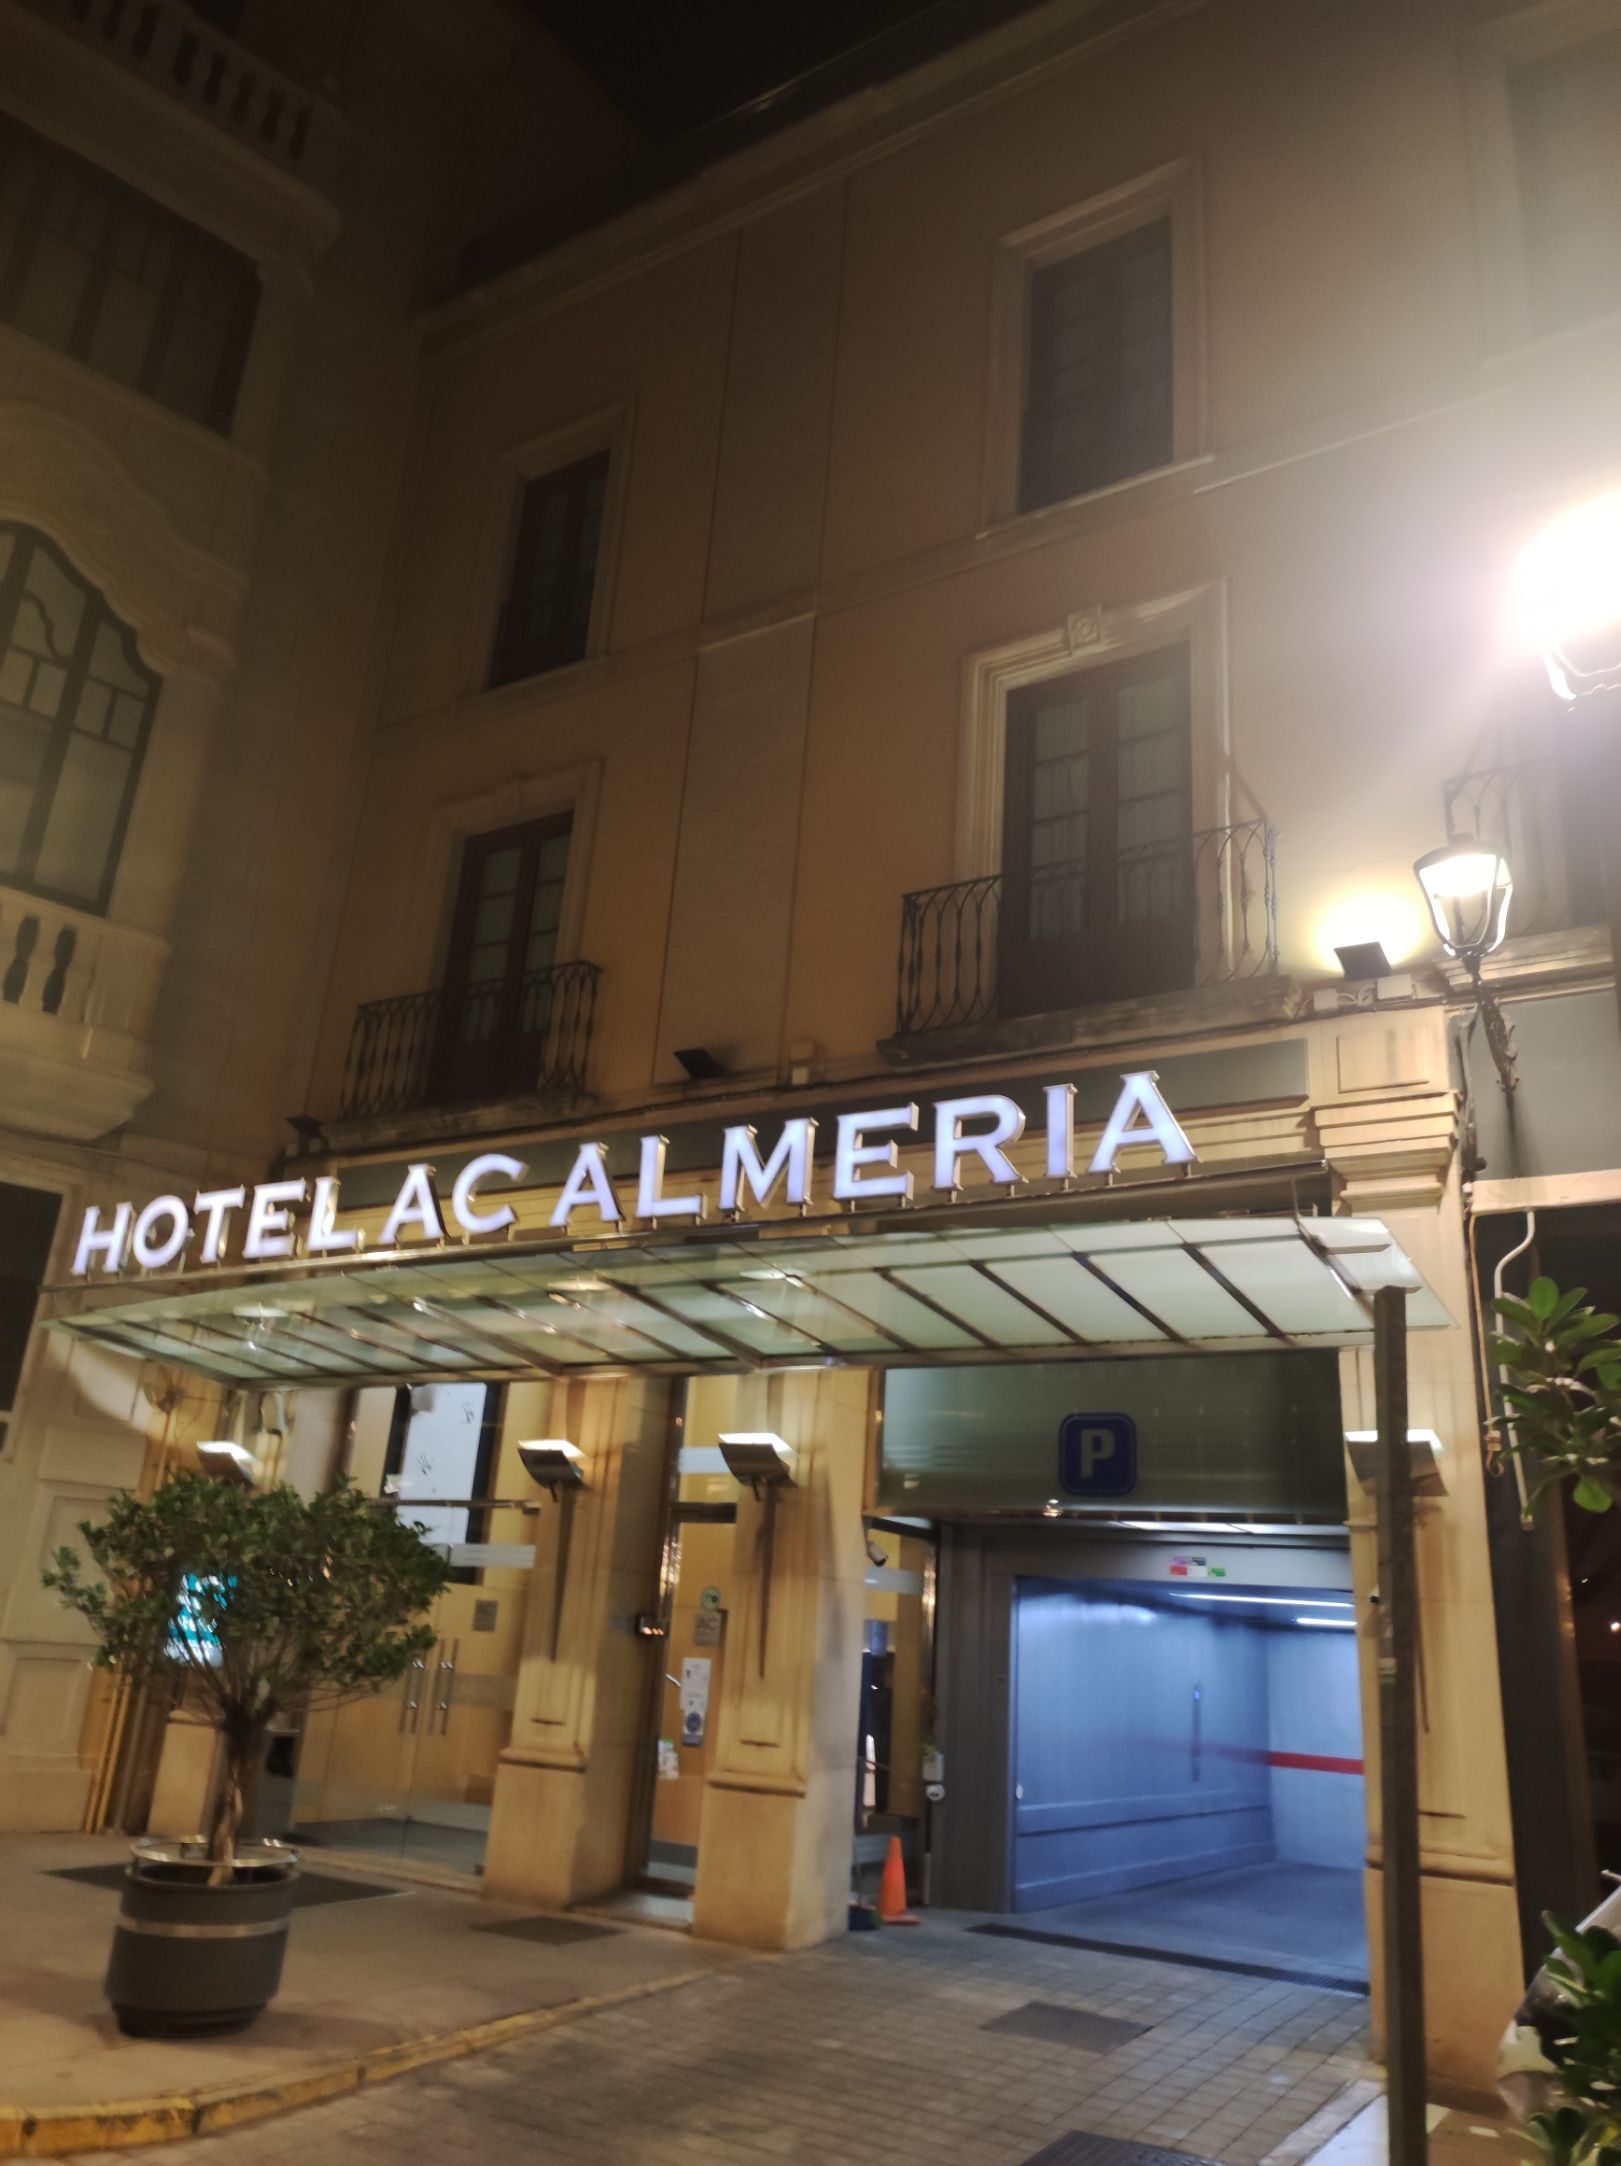 酒店位于阿尔梅利亚老城区，停车或者交15欧停在酒店，或者开出老城之外找个停车位。酒店房间中规中矩床品